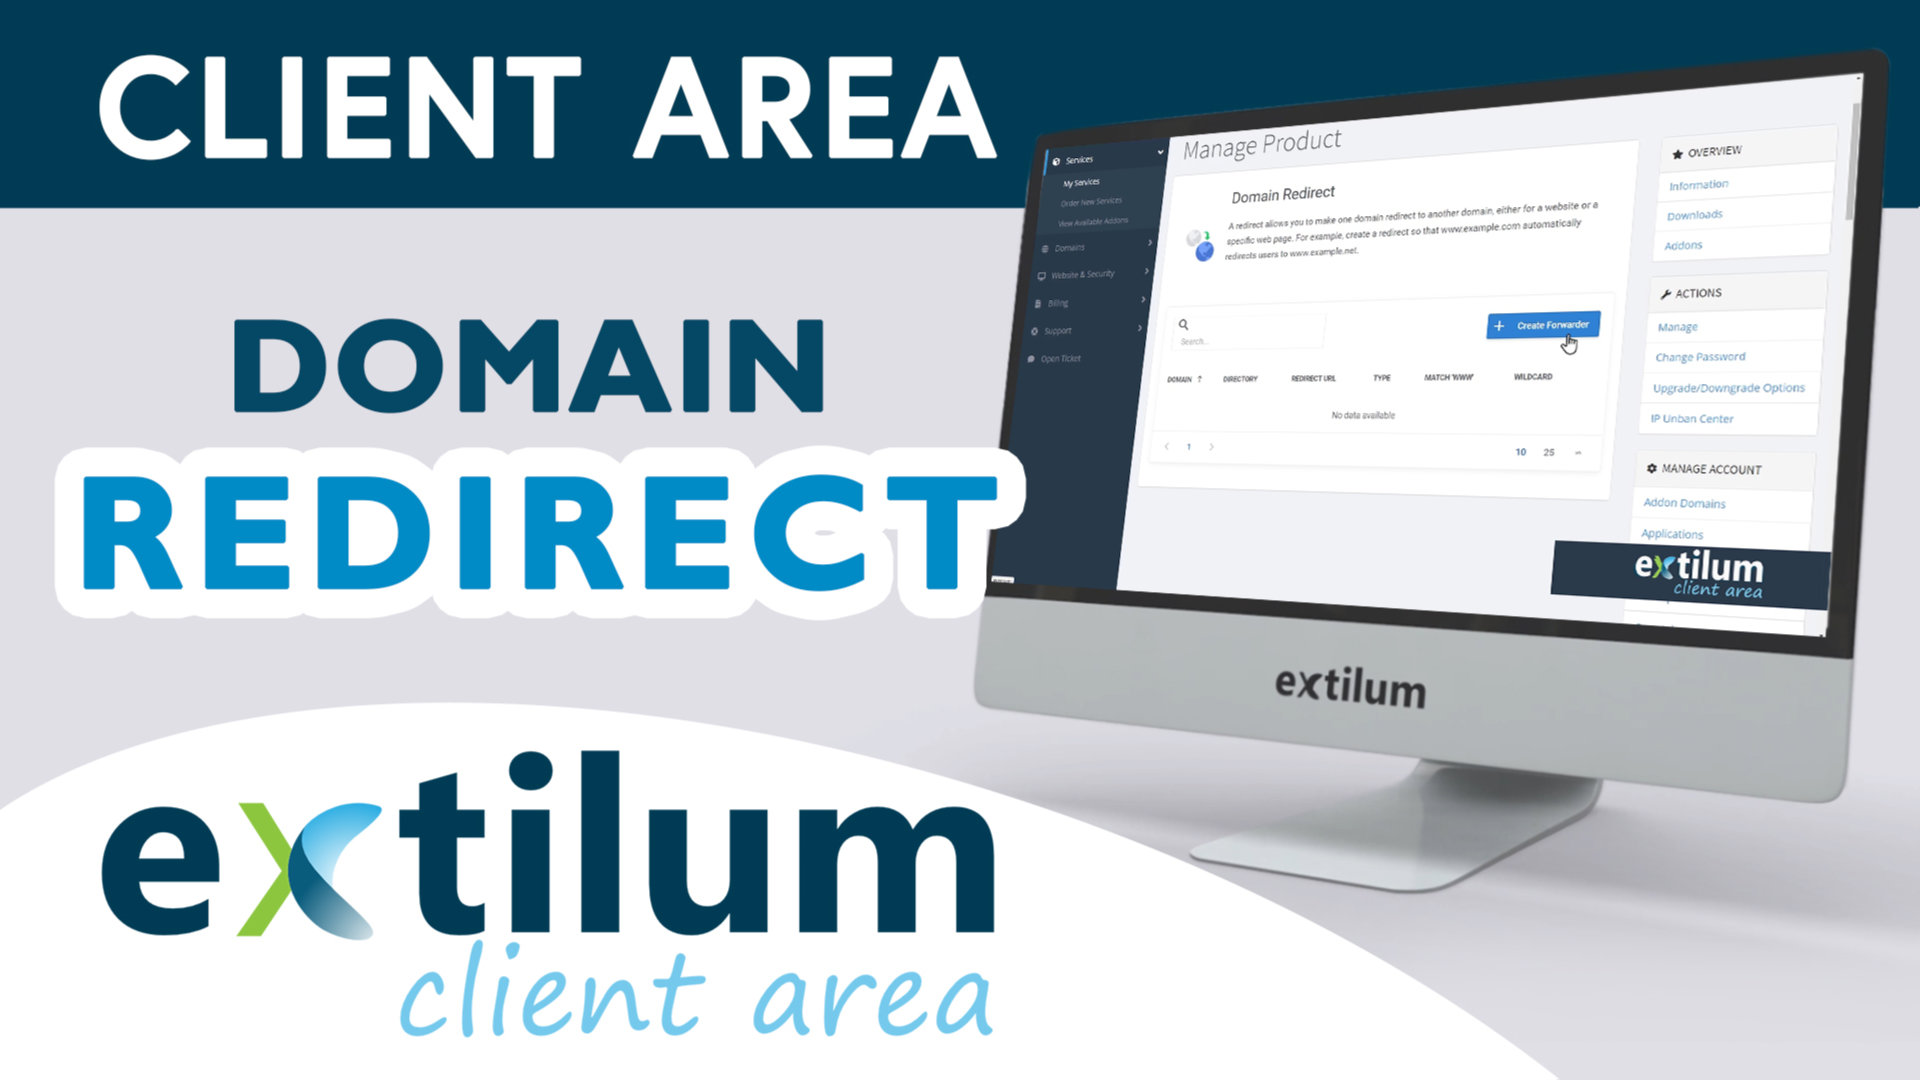 Extilum Client Area - Domain Redirect